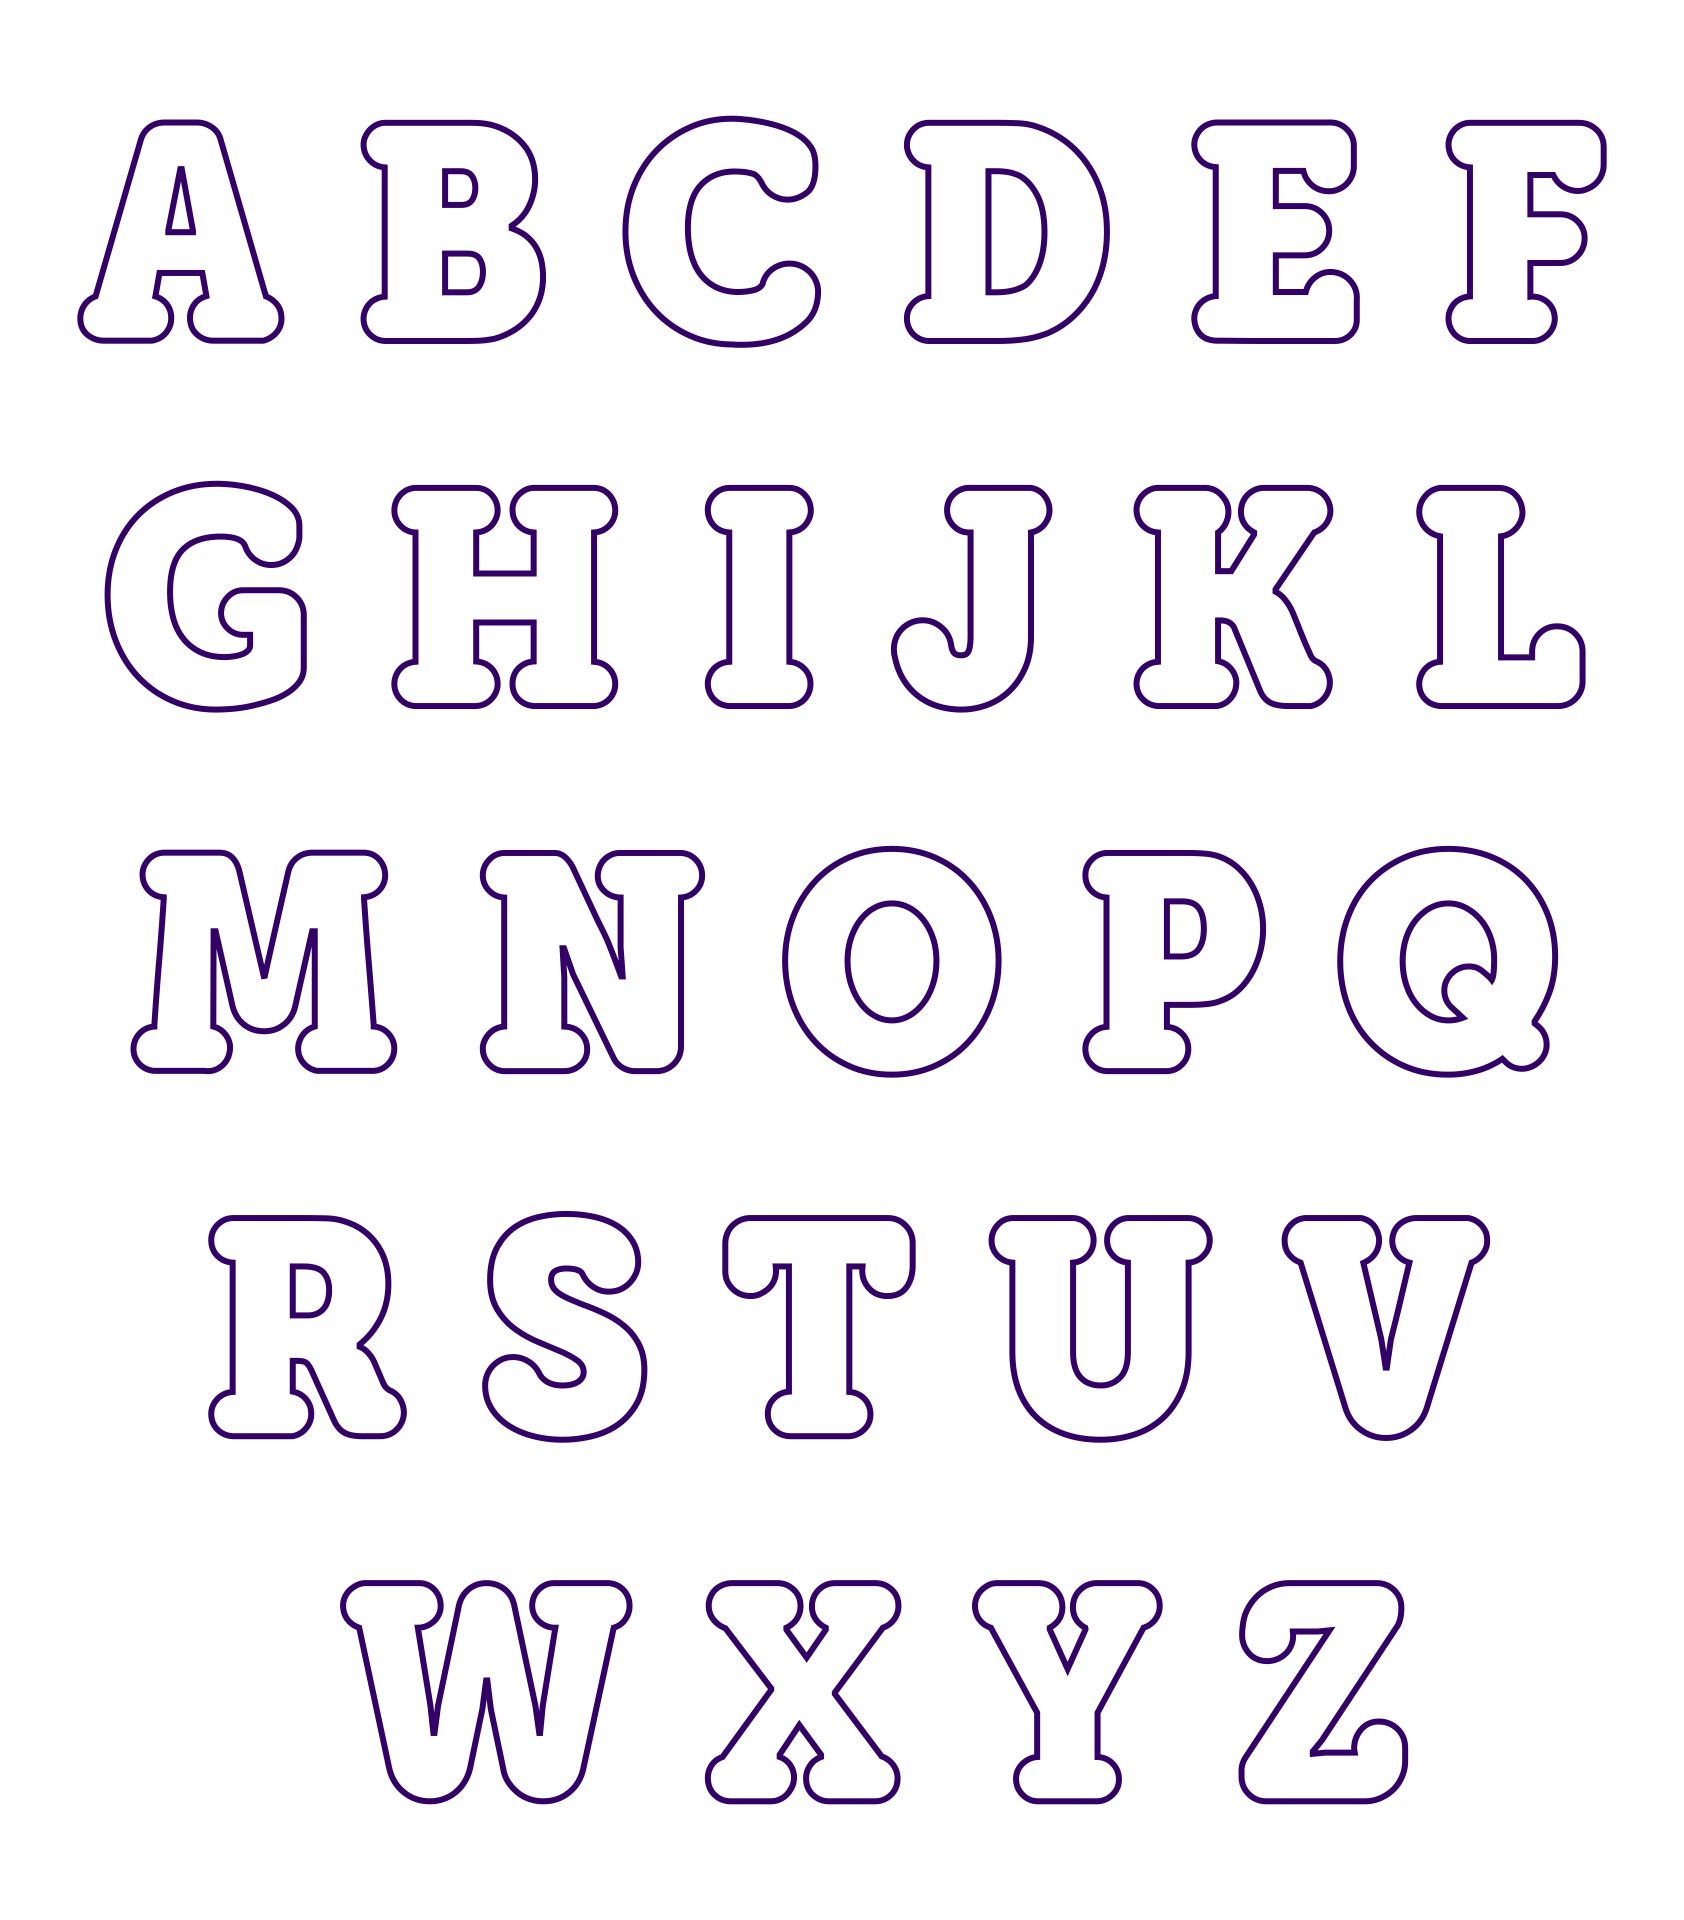 applique-alphabet-free-printable-free-printable-templates